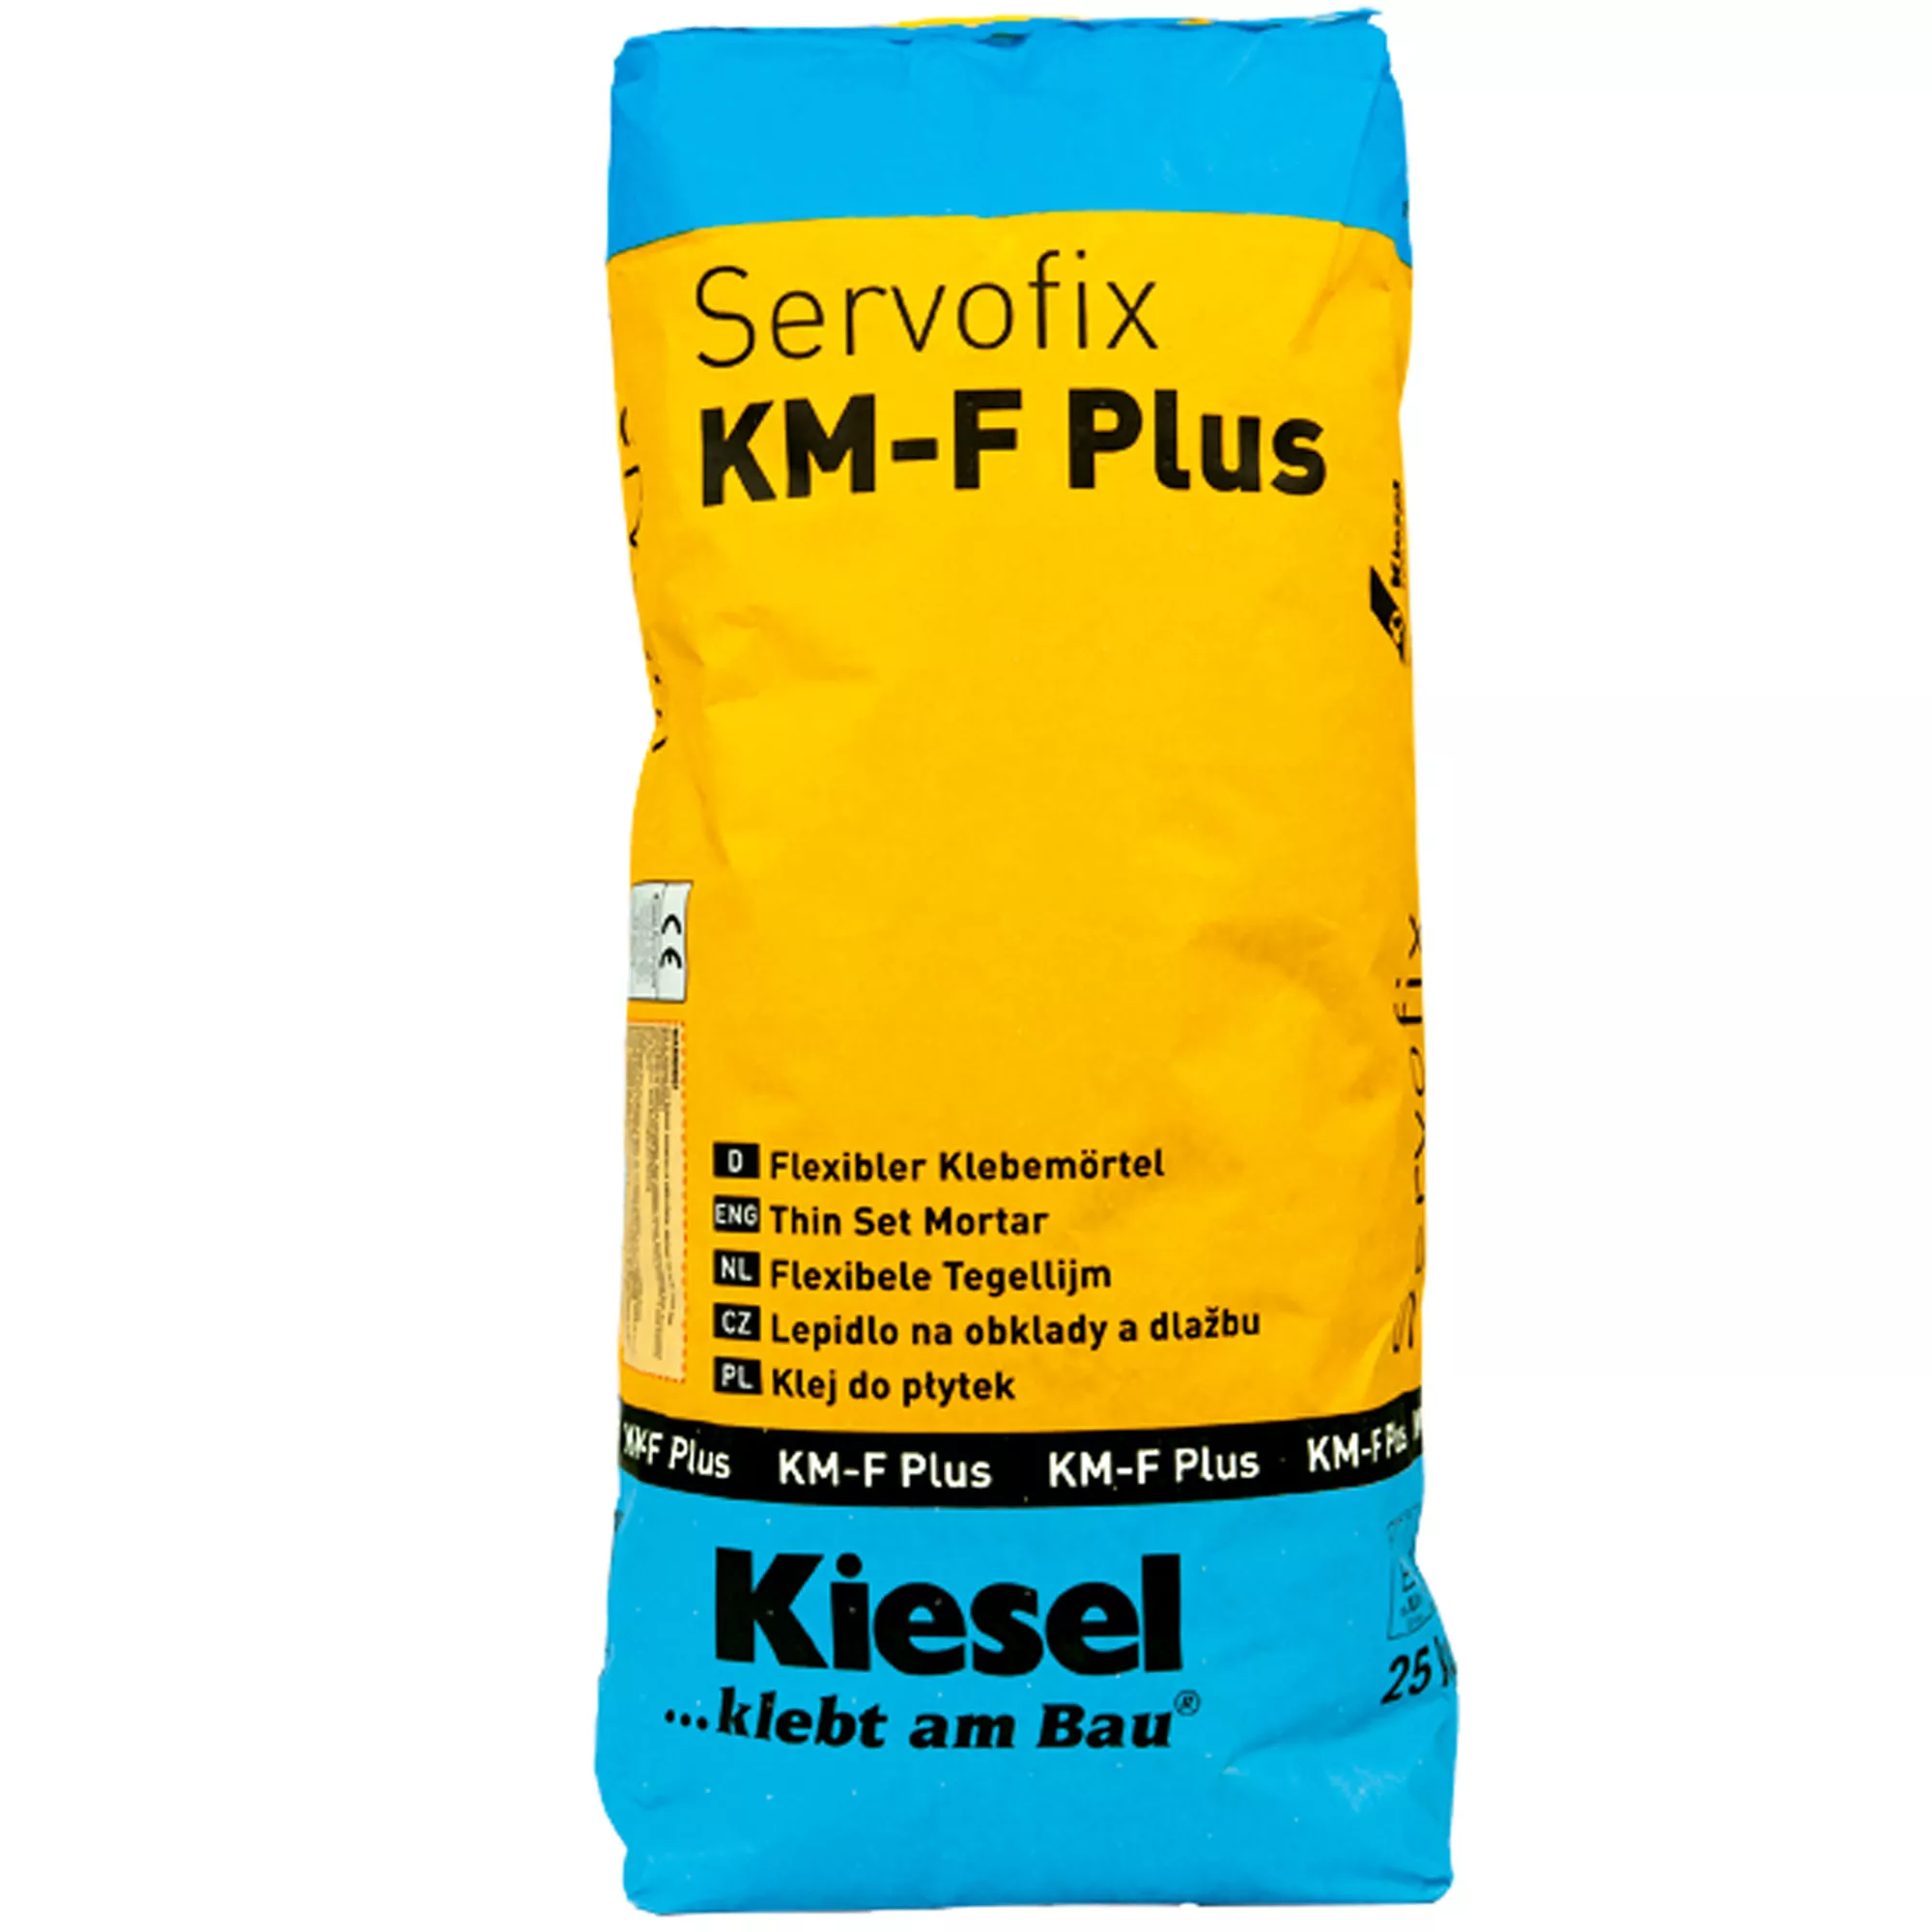 Kiesel Kakellim Servofix KM-F Plus - Flexibel Limmortel, Fint Stengods, Keramiska Plattor (25KG)